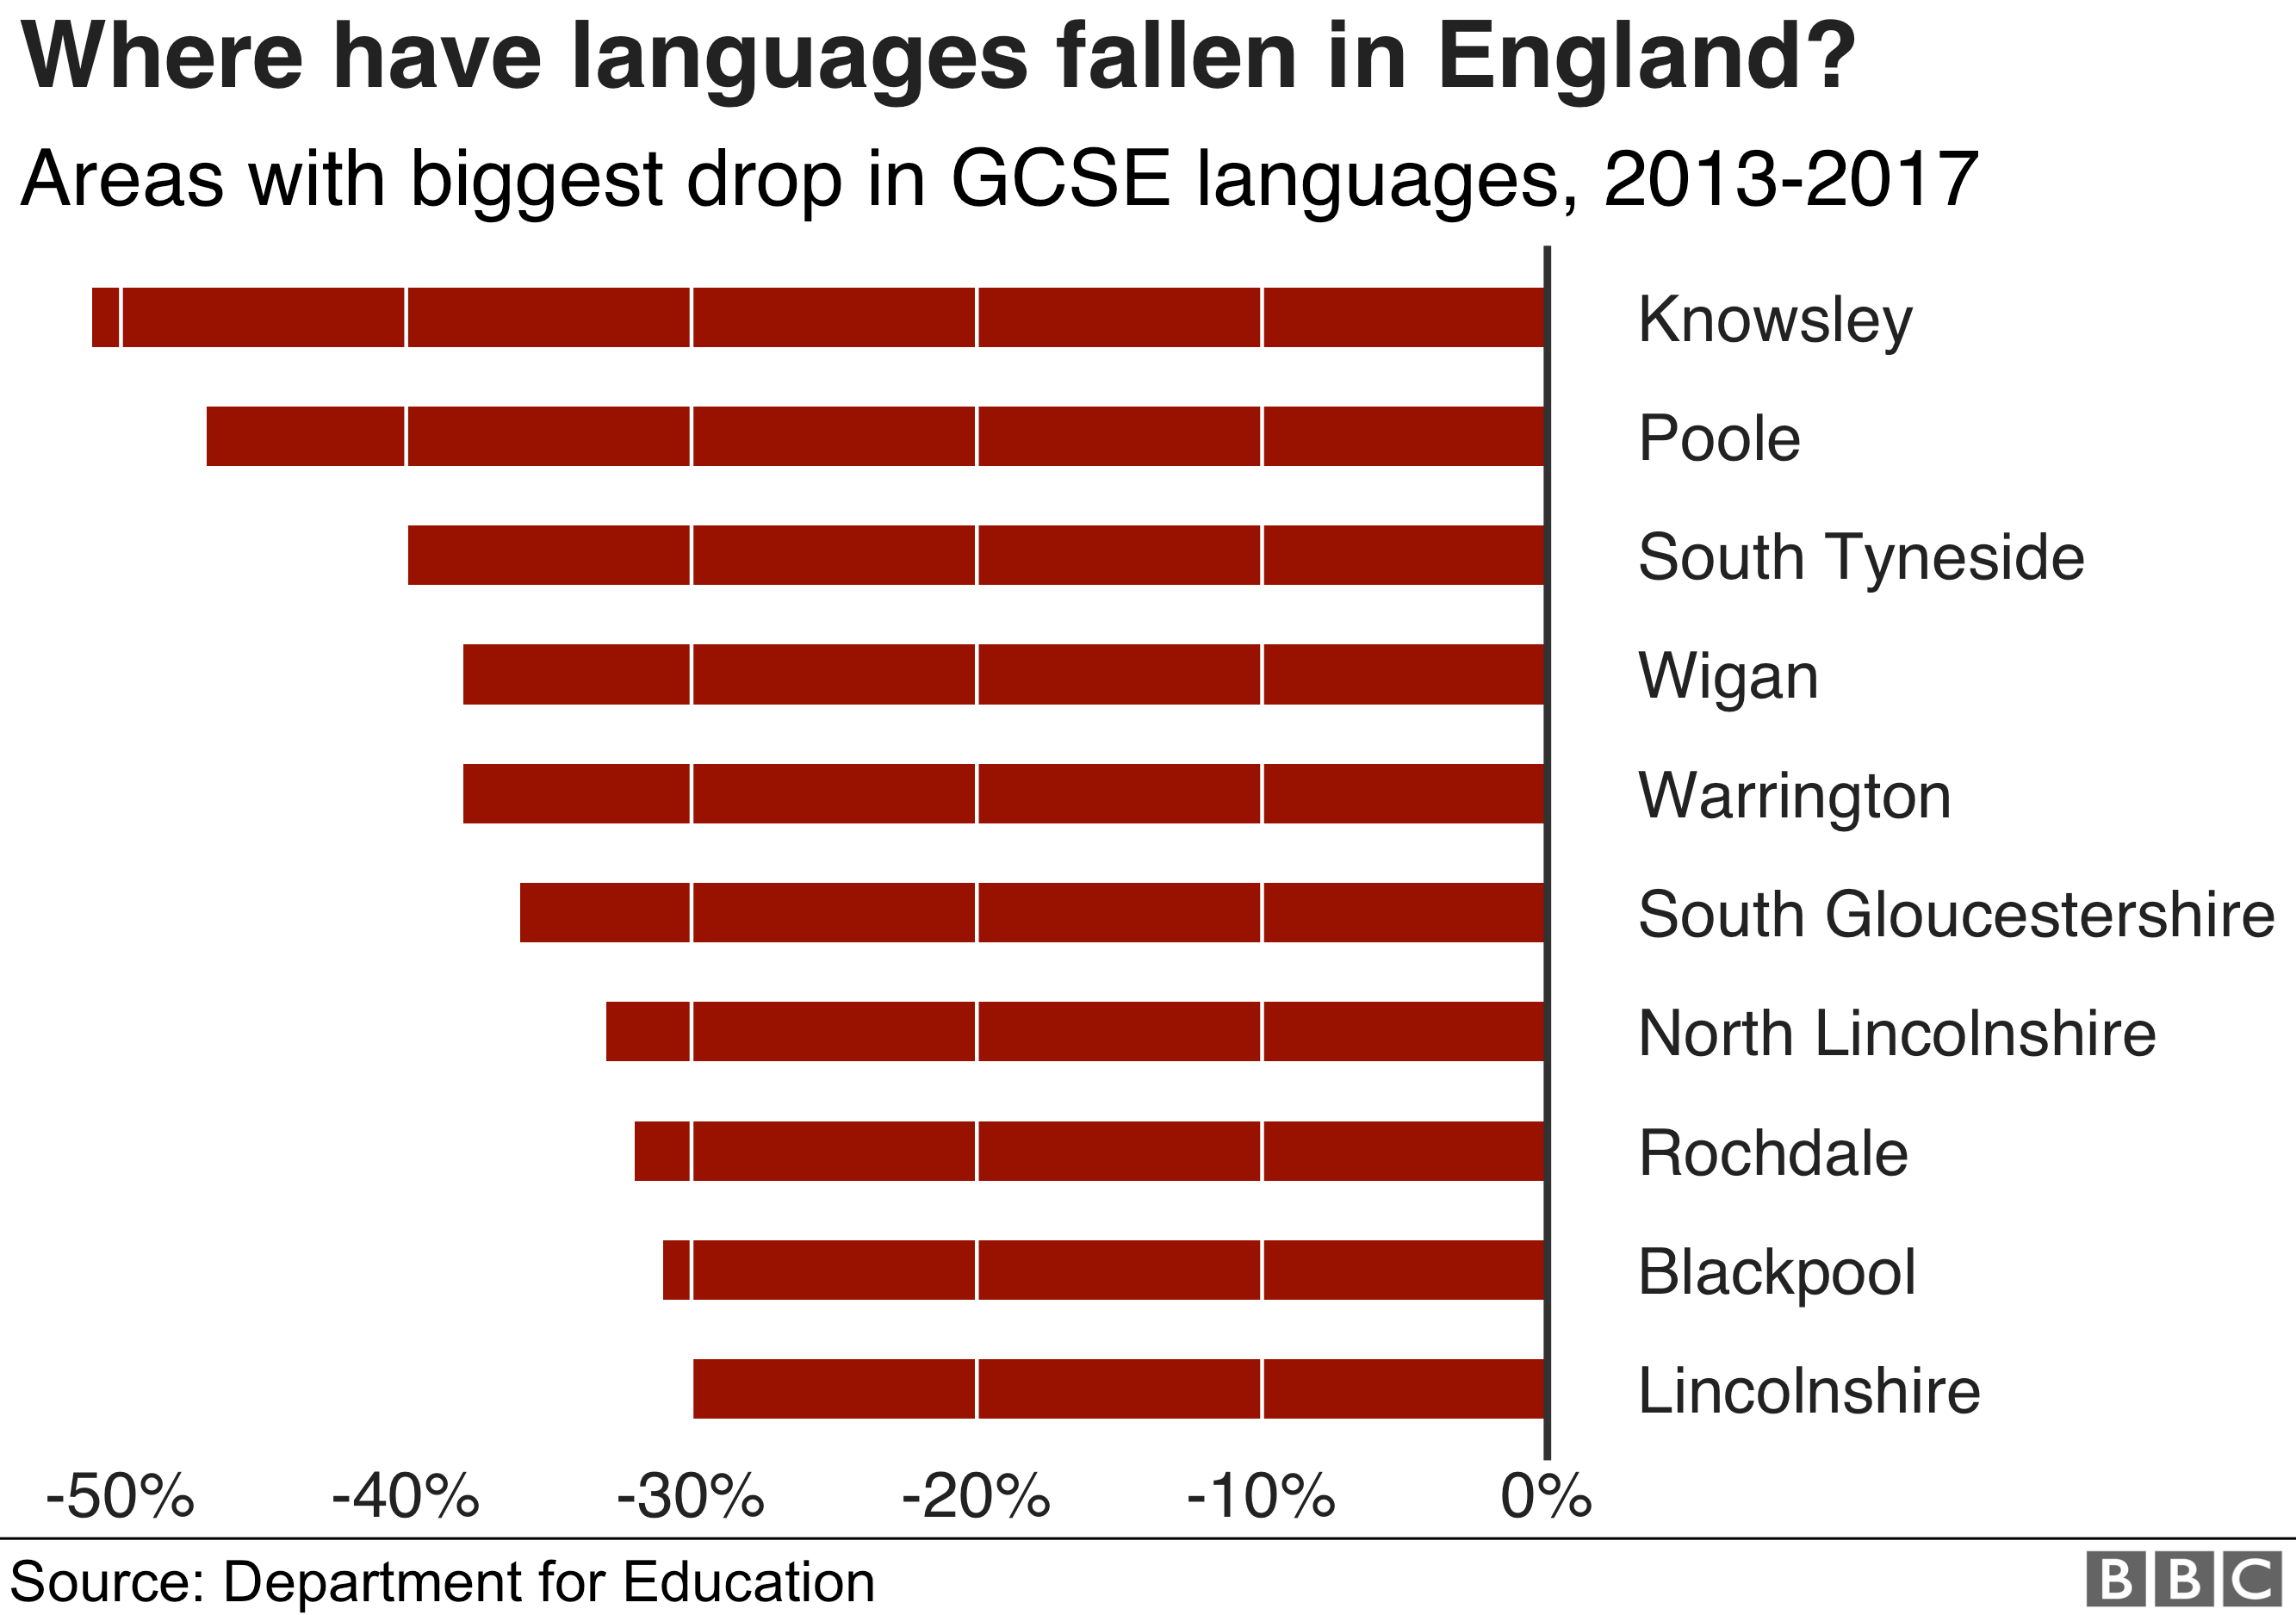 Диаграмма, показывающая 10 местных органов власти в Англии с самым большим падением языков GCSE с 2013 по 2016 год, при этом Knowsley, Poole и South Tyneside фиксируют самое большое снижение